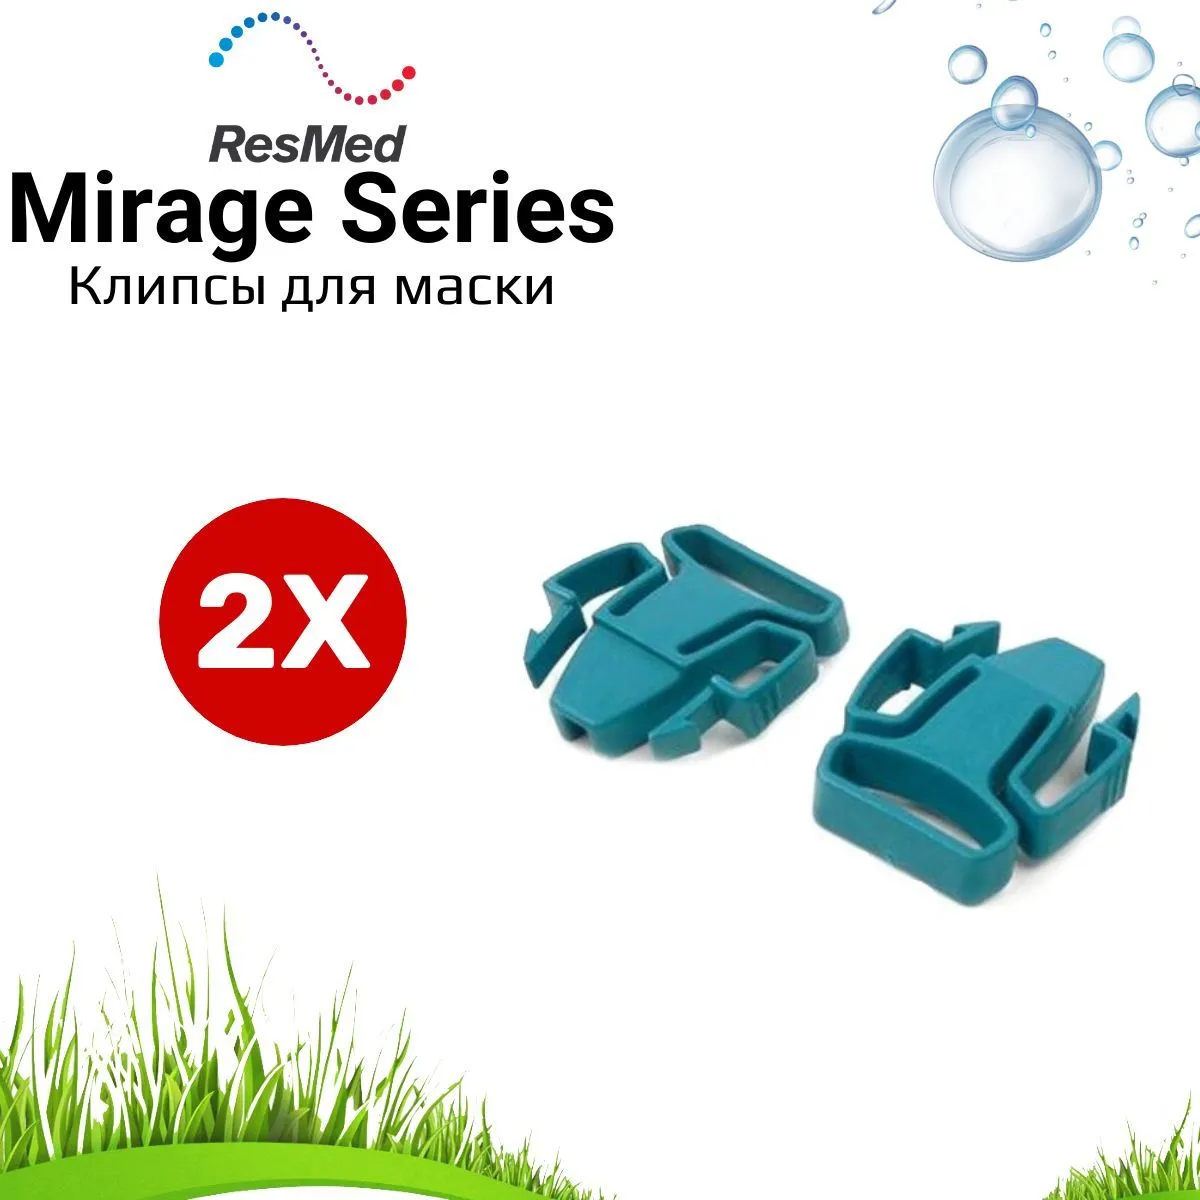 ResMed серия Mirage - клипсы (застежки) для СИПАП маски - 2 штуки